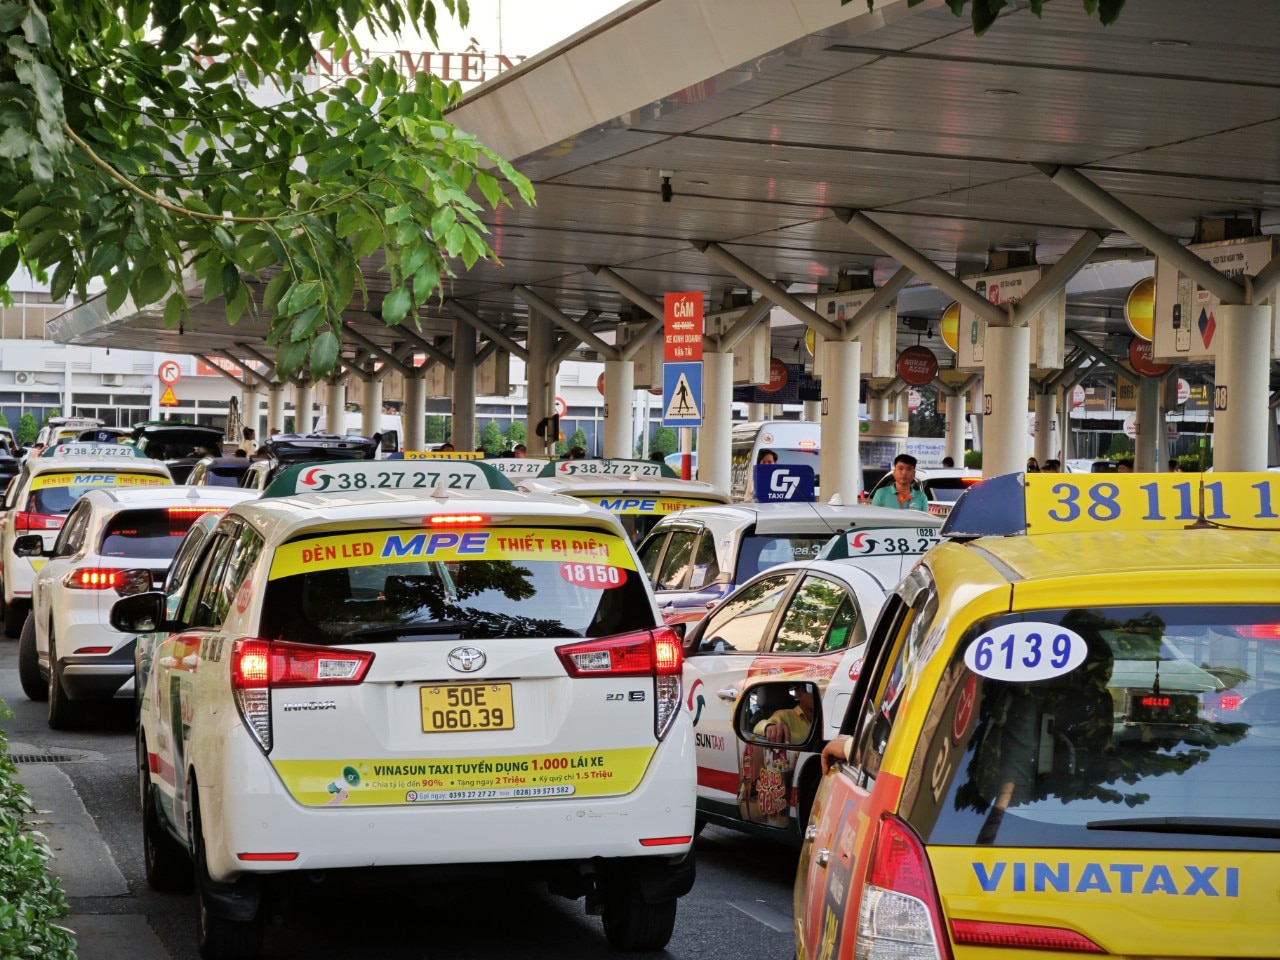 Sân bay Tân Sơn Nhất sẽ tăng cường kiểm tra giám sát hoạt động kinh doanh của taxi, xe công nghệ trong dịp hè, quyết dứt điểm hiện tượng chèo kéo, nâng giá cước - Ảnh: CÔNG TRUNG